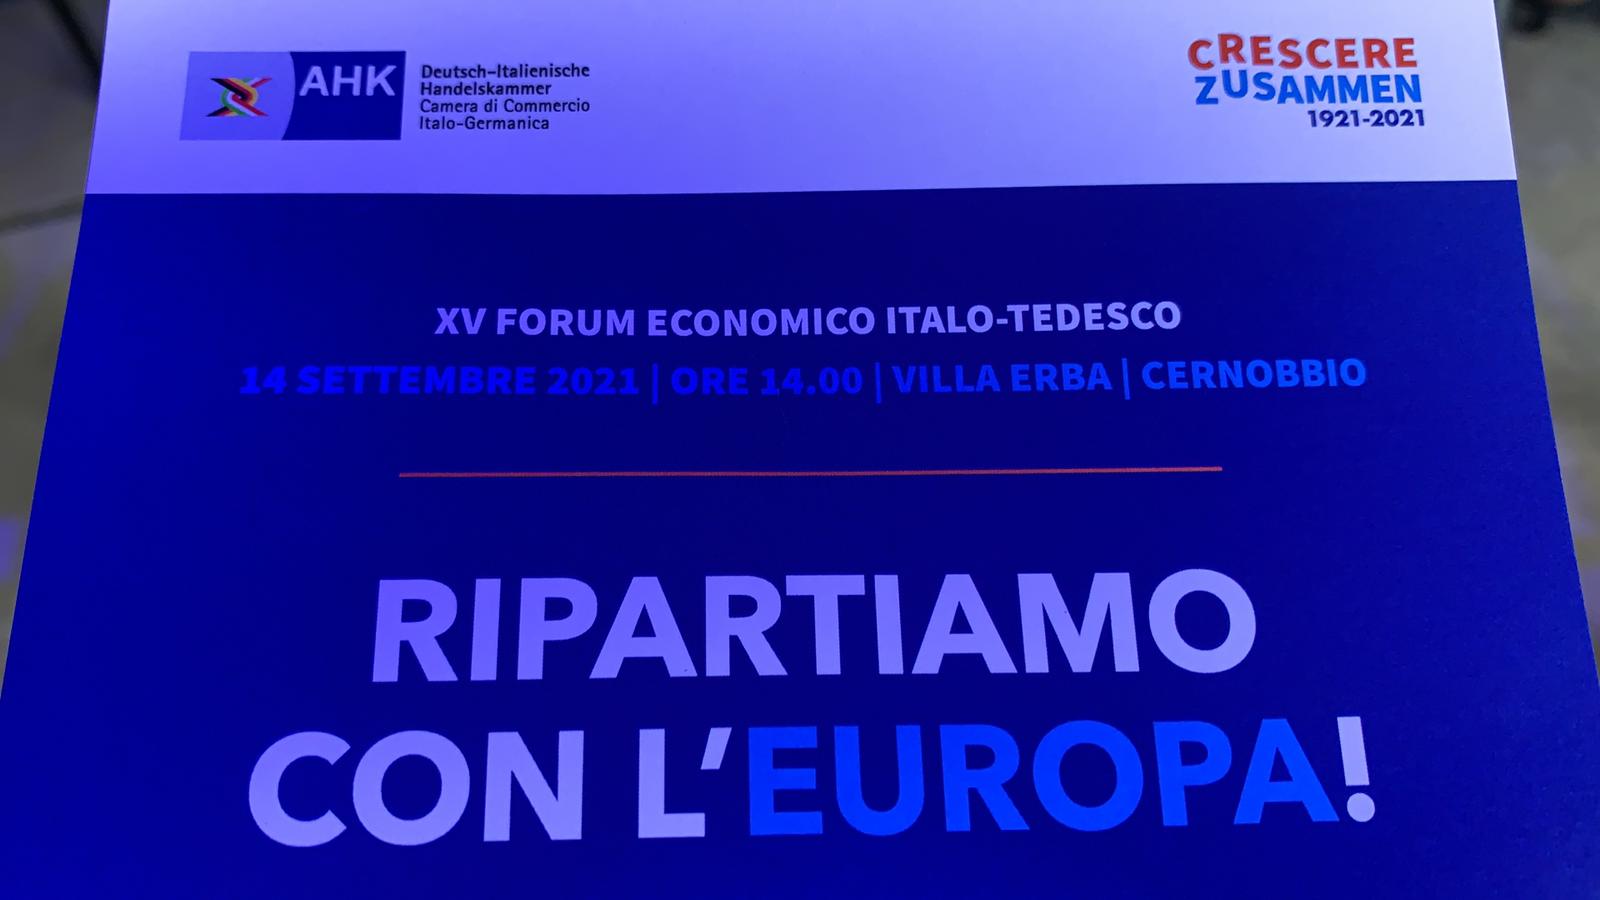 Consorzio ERP Italia è presente all’evento “RIPARTIAMO CON L’EUROPA!”